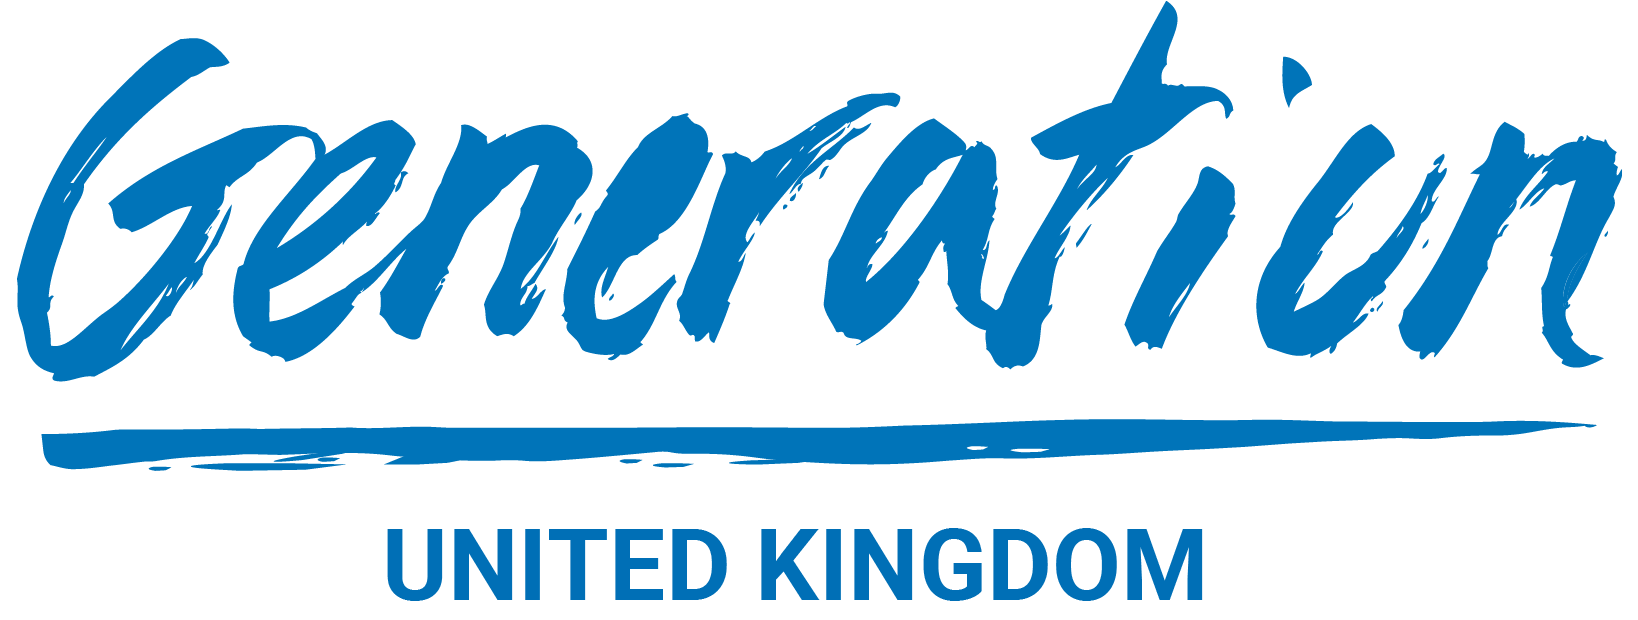 Generation UK Logo.